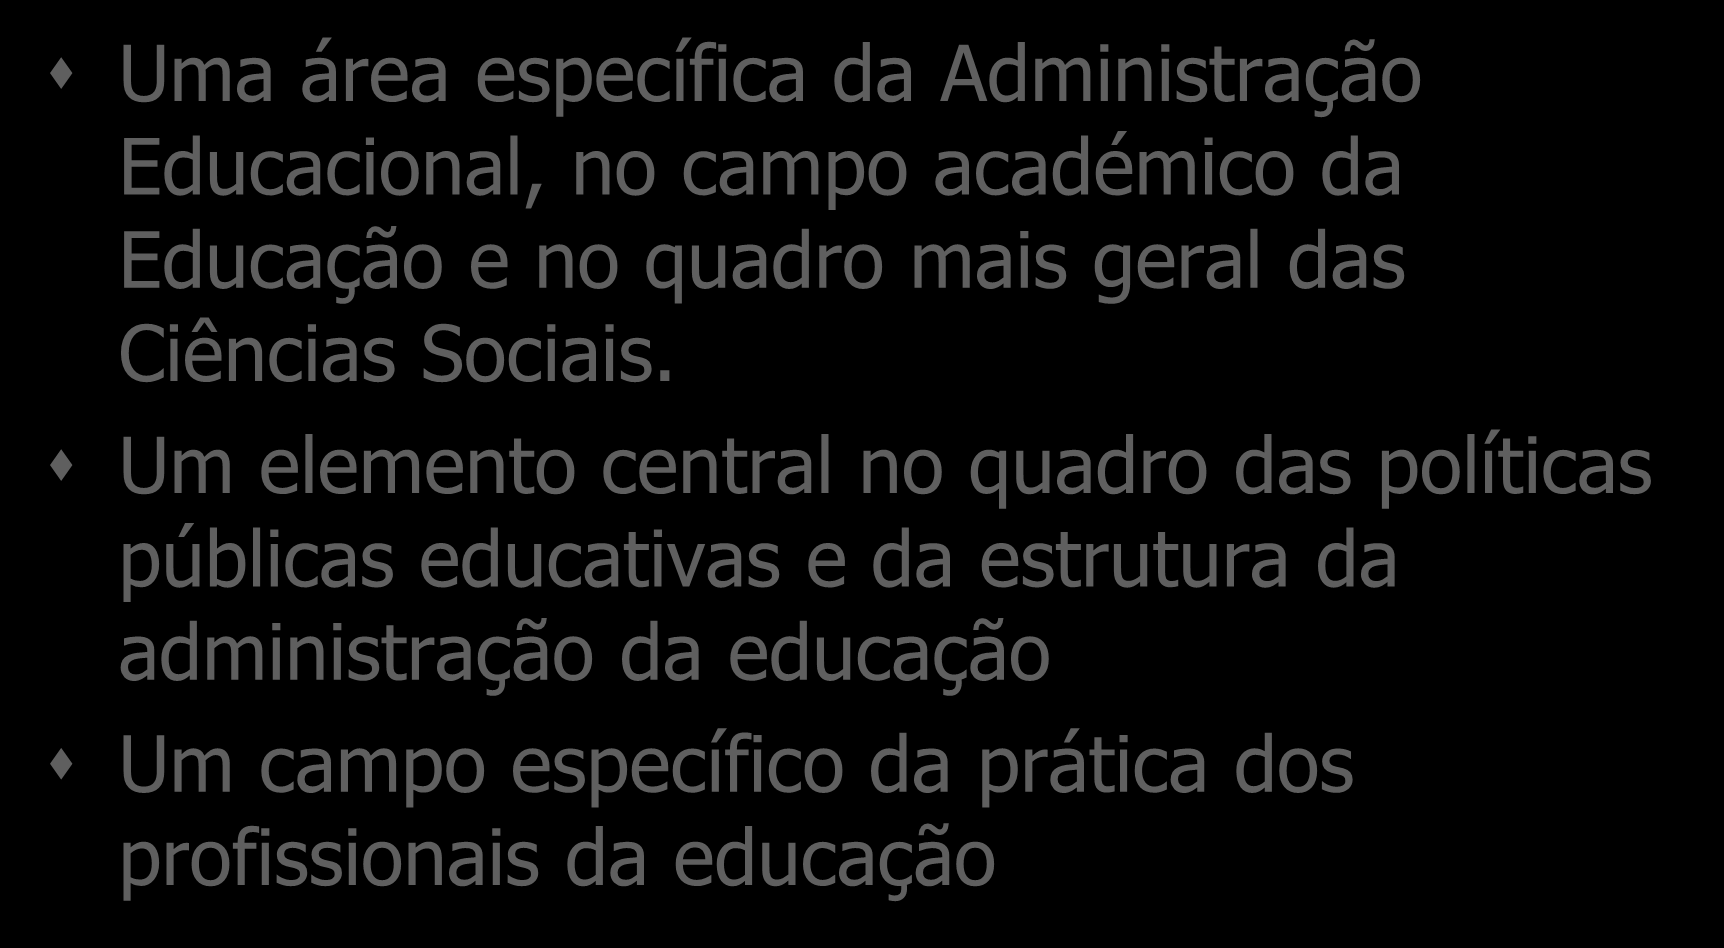 Gestão escolar: definição Uma área específica da Administração Educacional, no campo académico da Educação e no quadro mais geral das Ciências Sociais.